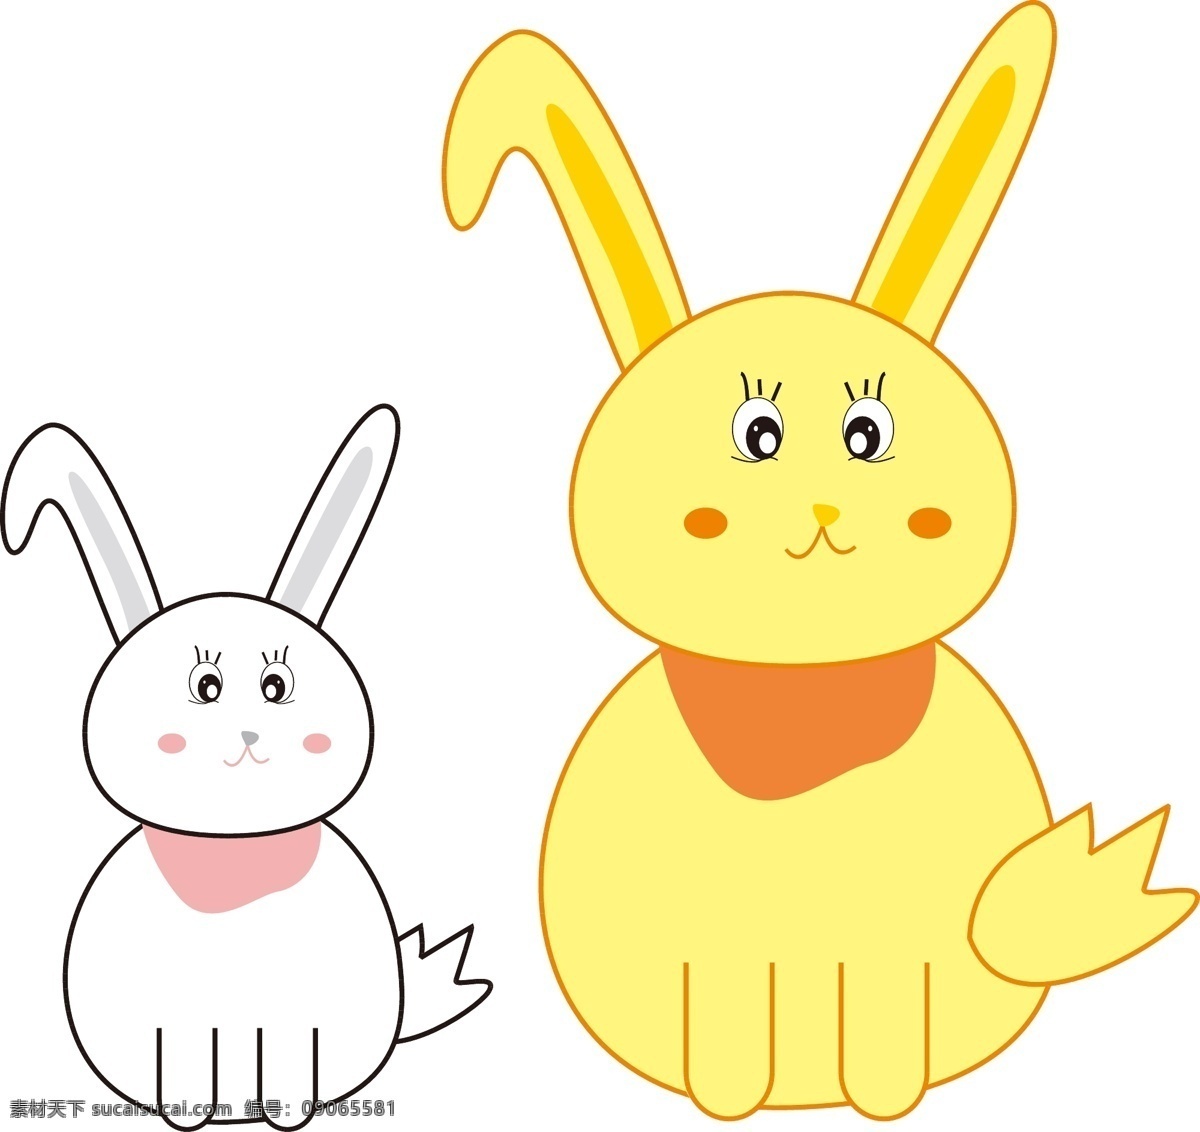 矢量 白色 兔子 黄色 矢量卡通兔子 白兔字 黄兔子 可爱的兔子 吃草的 动物矢量 卡通插画设计 萌萌哒